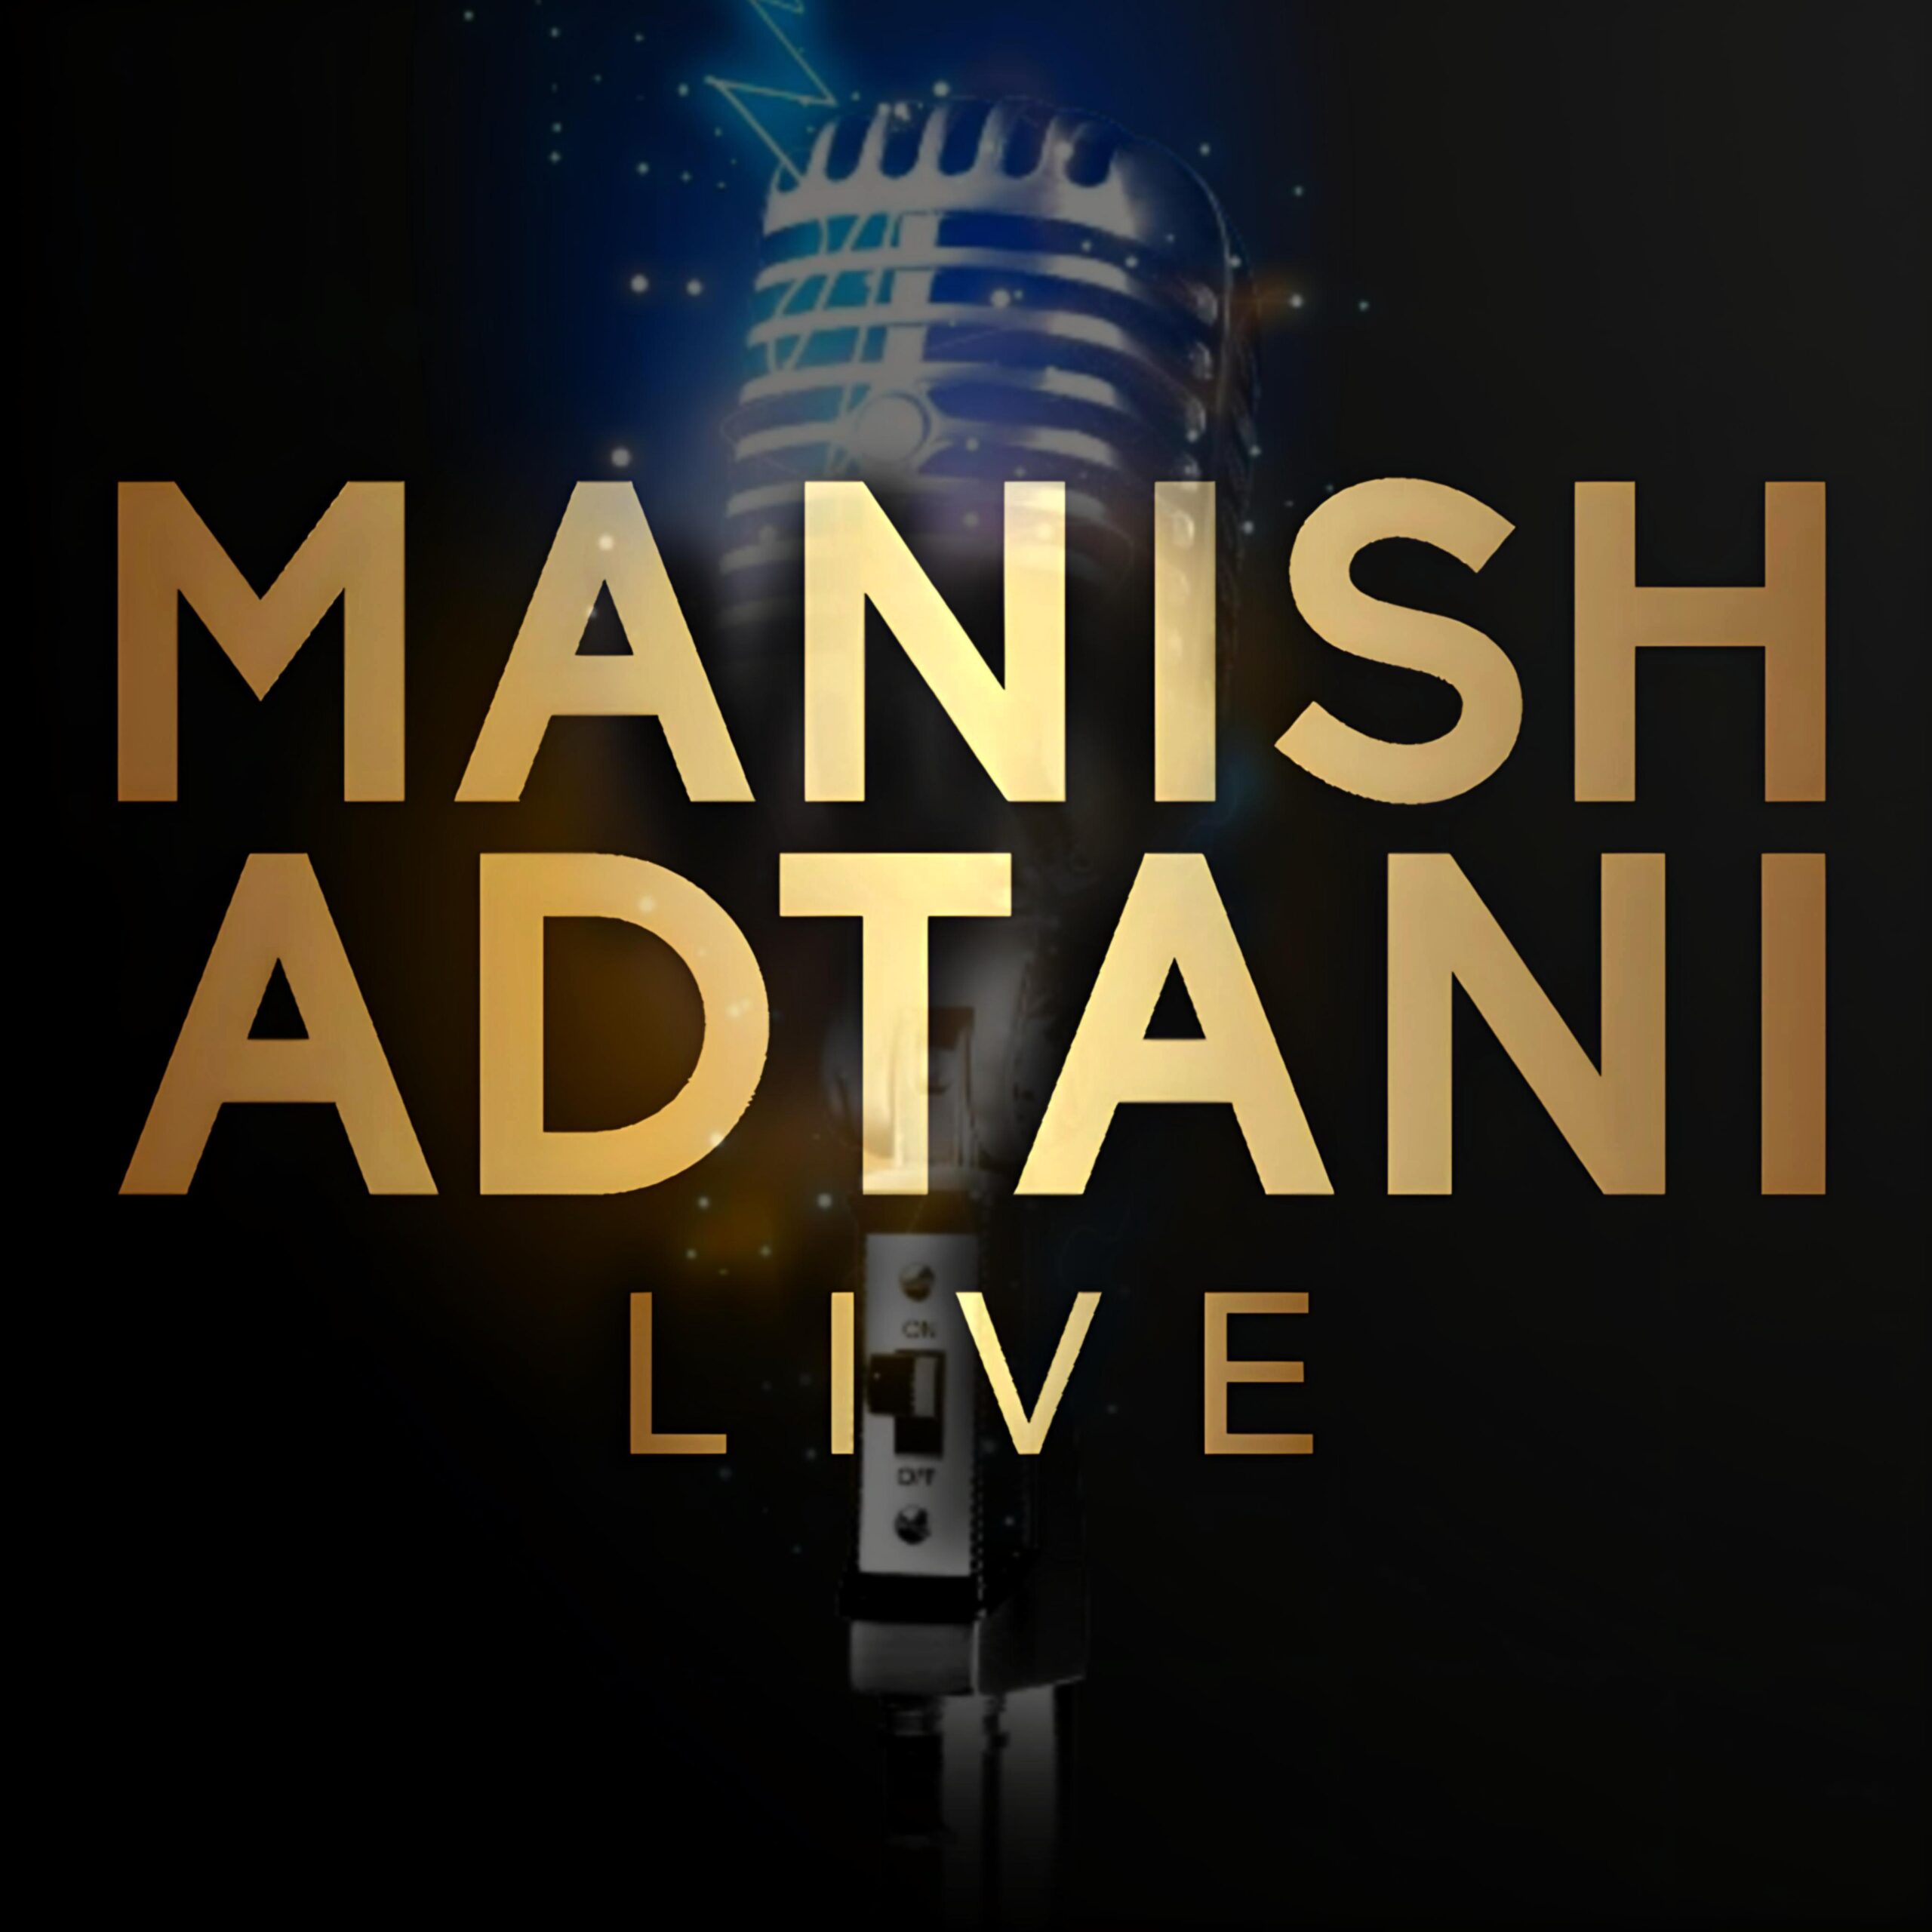 Manish-Adtani-Harshit Kumar